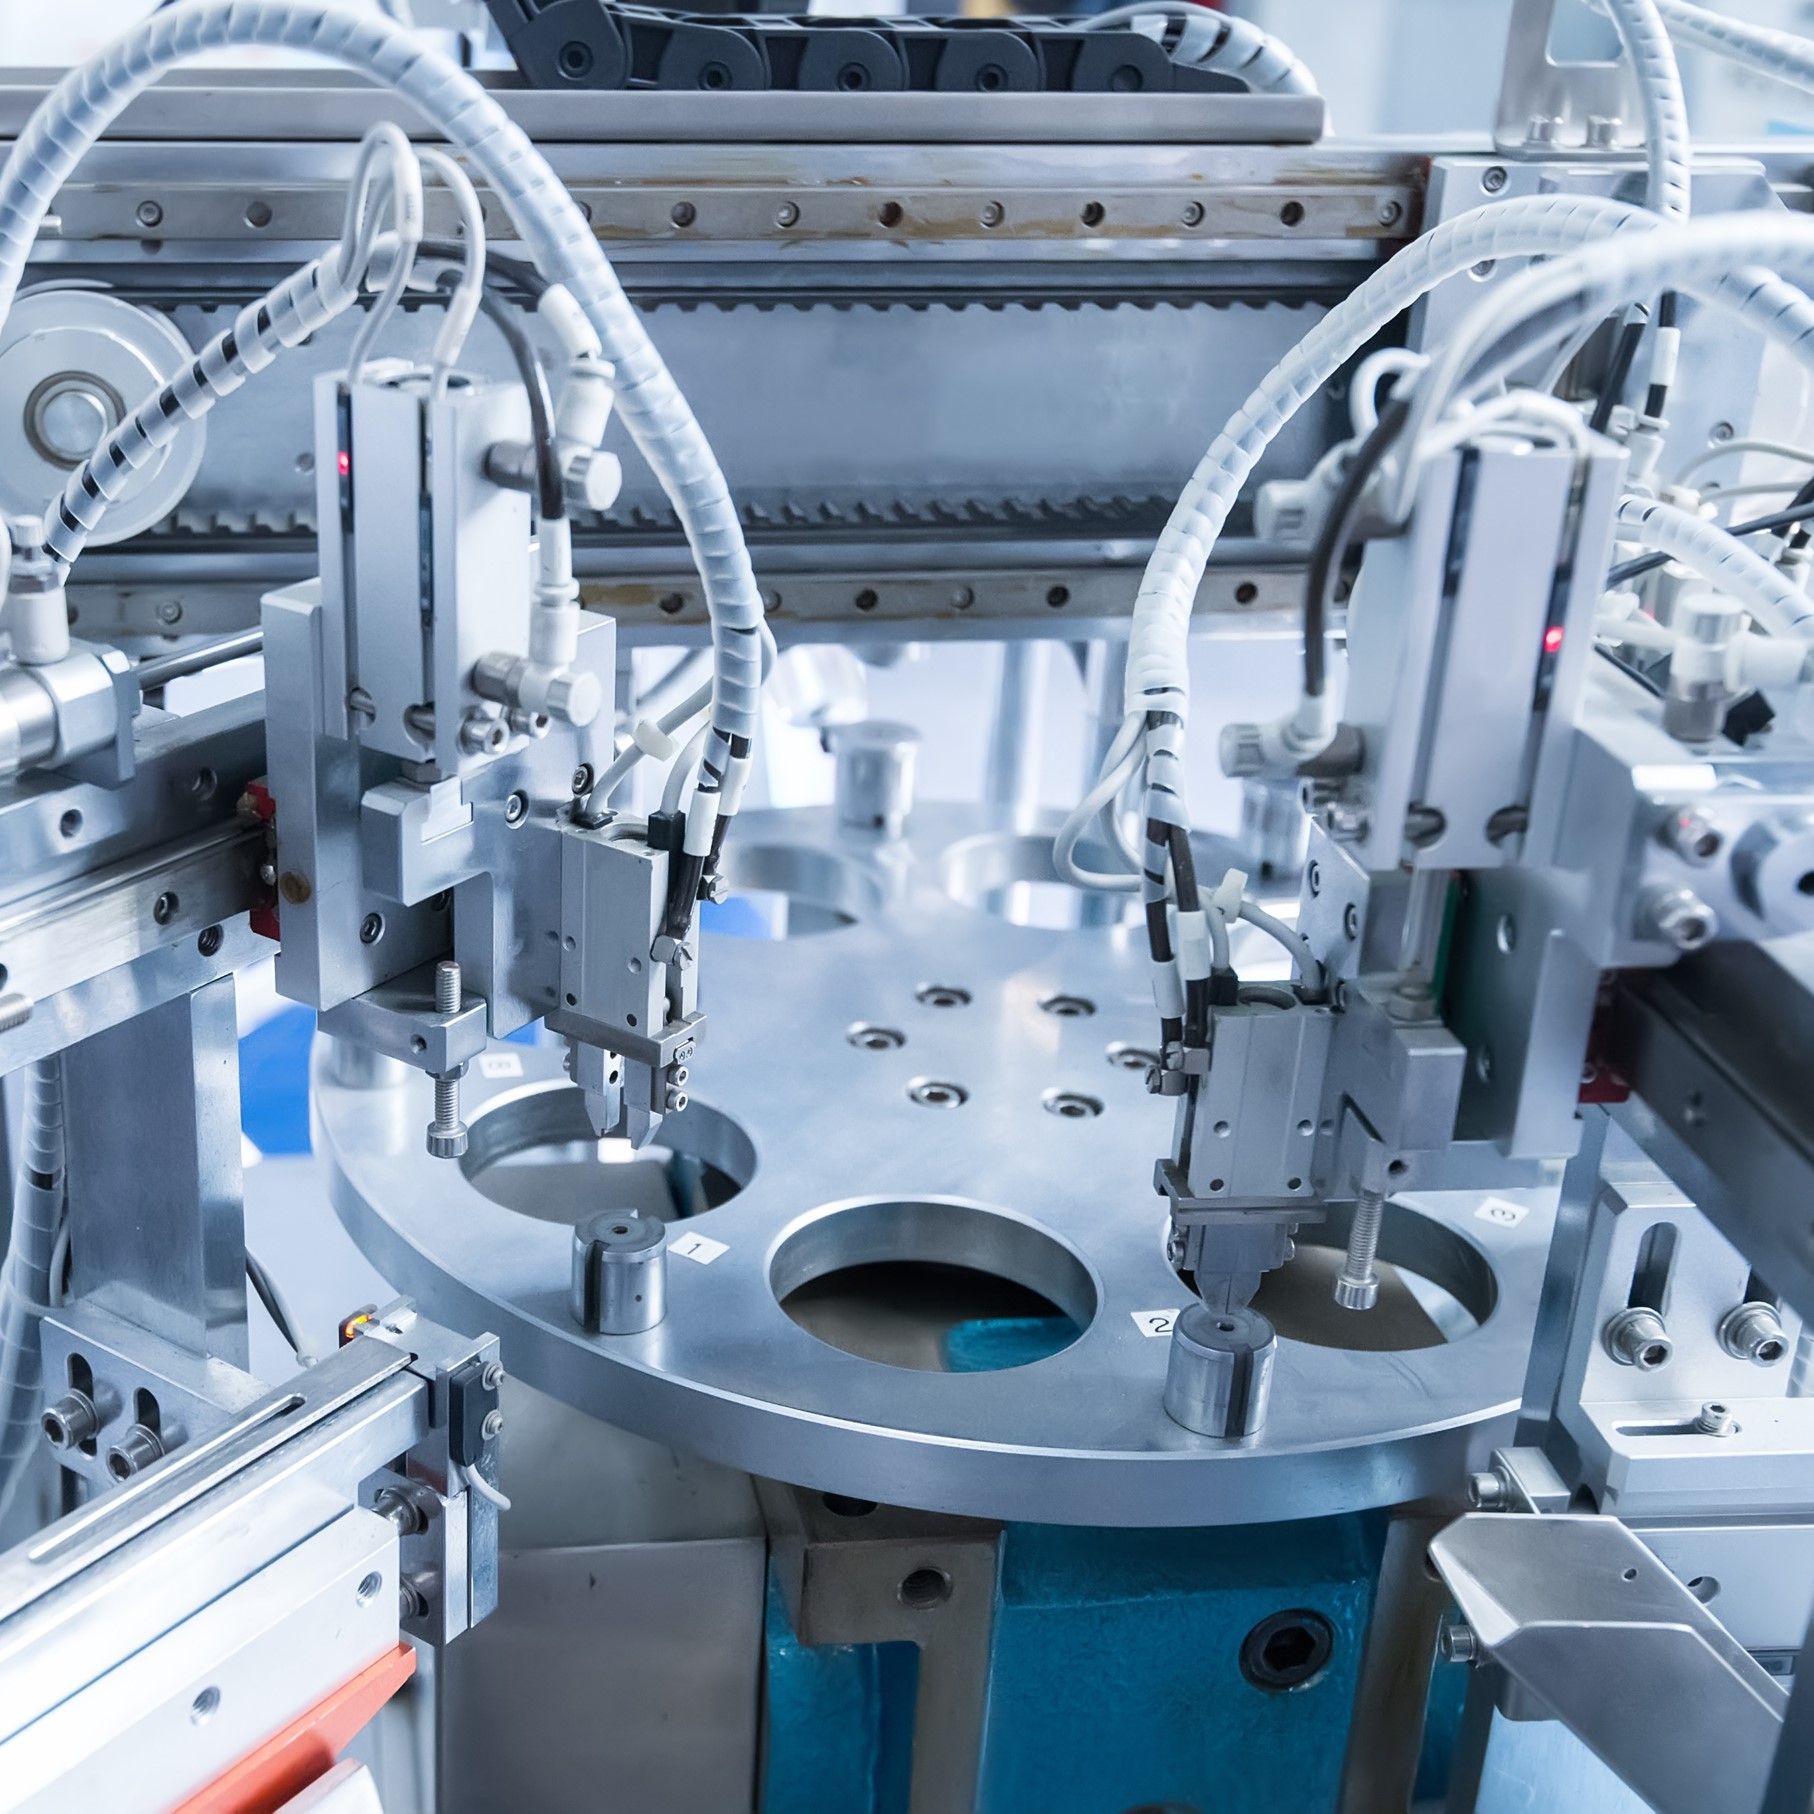 Industrielle Konnektivitätslösung für die Fabrikautomatisierung und medizinische raue Umgebung.